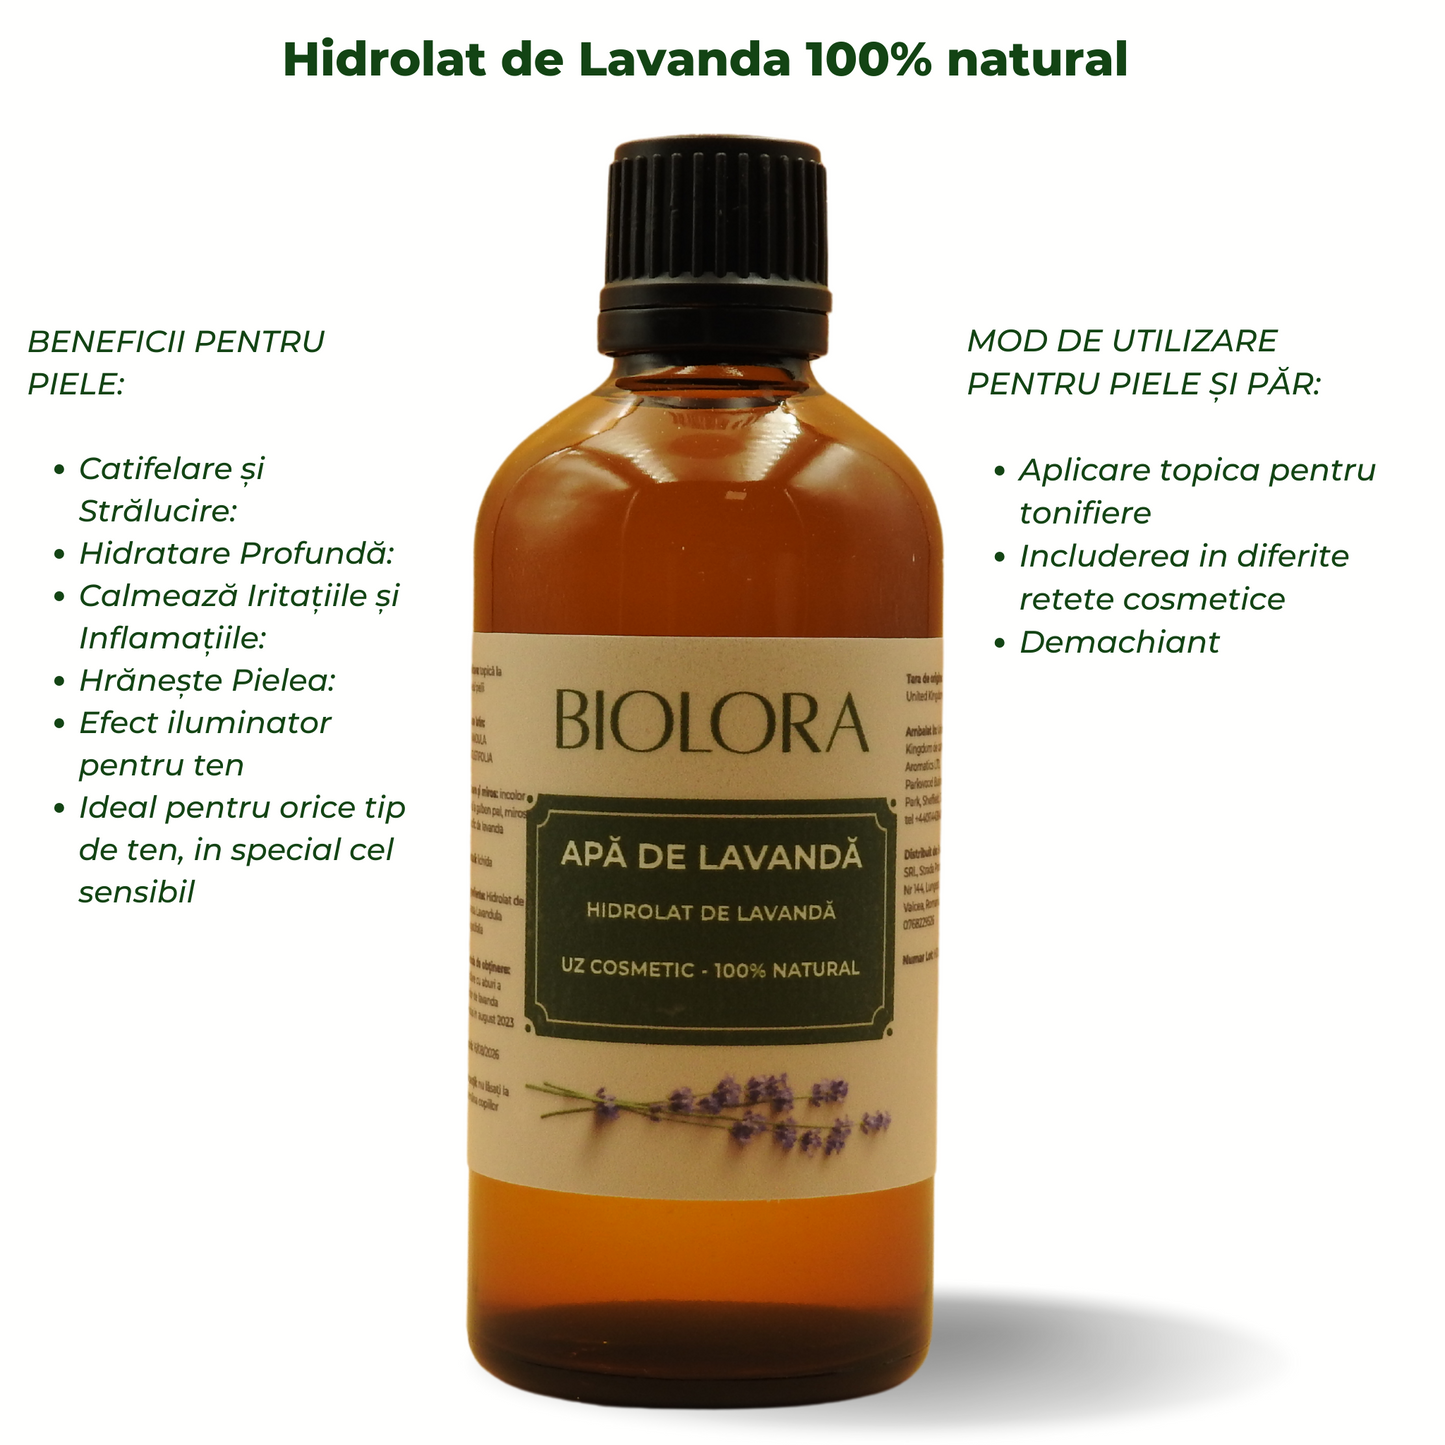 Apa de Lavanda/ Hidrolat de Lavanda Biolora, 100% natural, uz cosmetic, pentru ingrijirea pielii si a parului, 100 ml